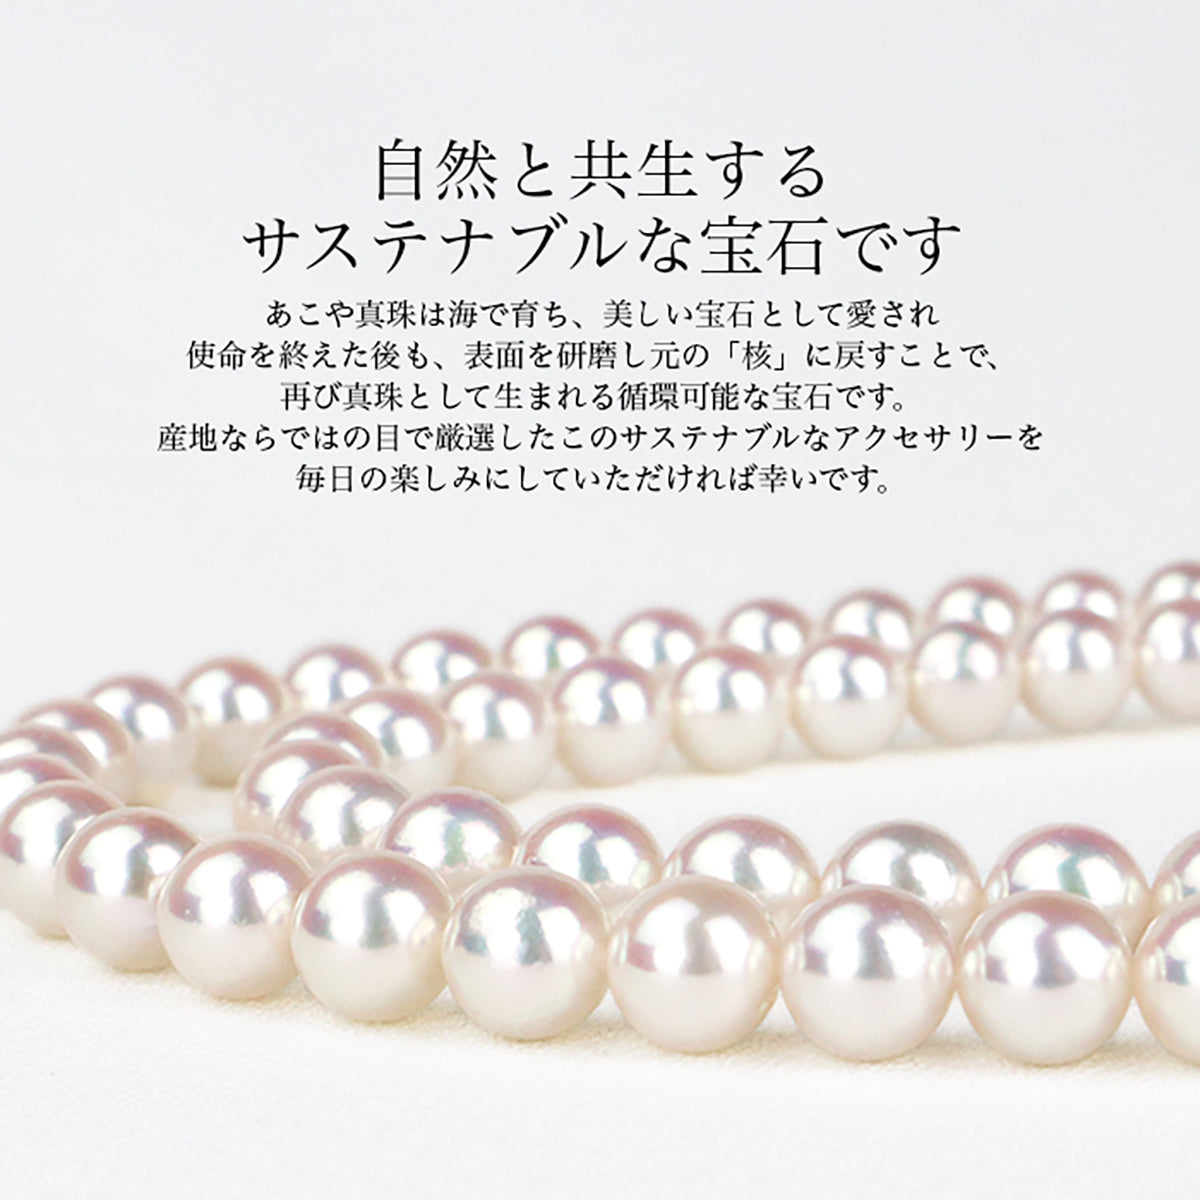 あこや真珠 2珠パールリング 全3色 5.0-8.5mm フリーサイズ アコヤ パール フォークリング